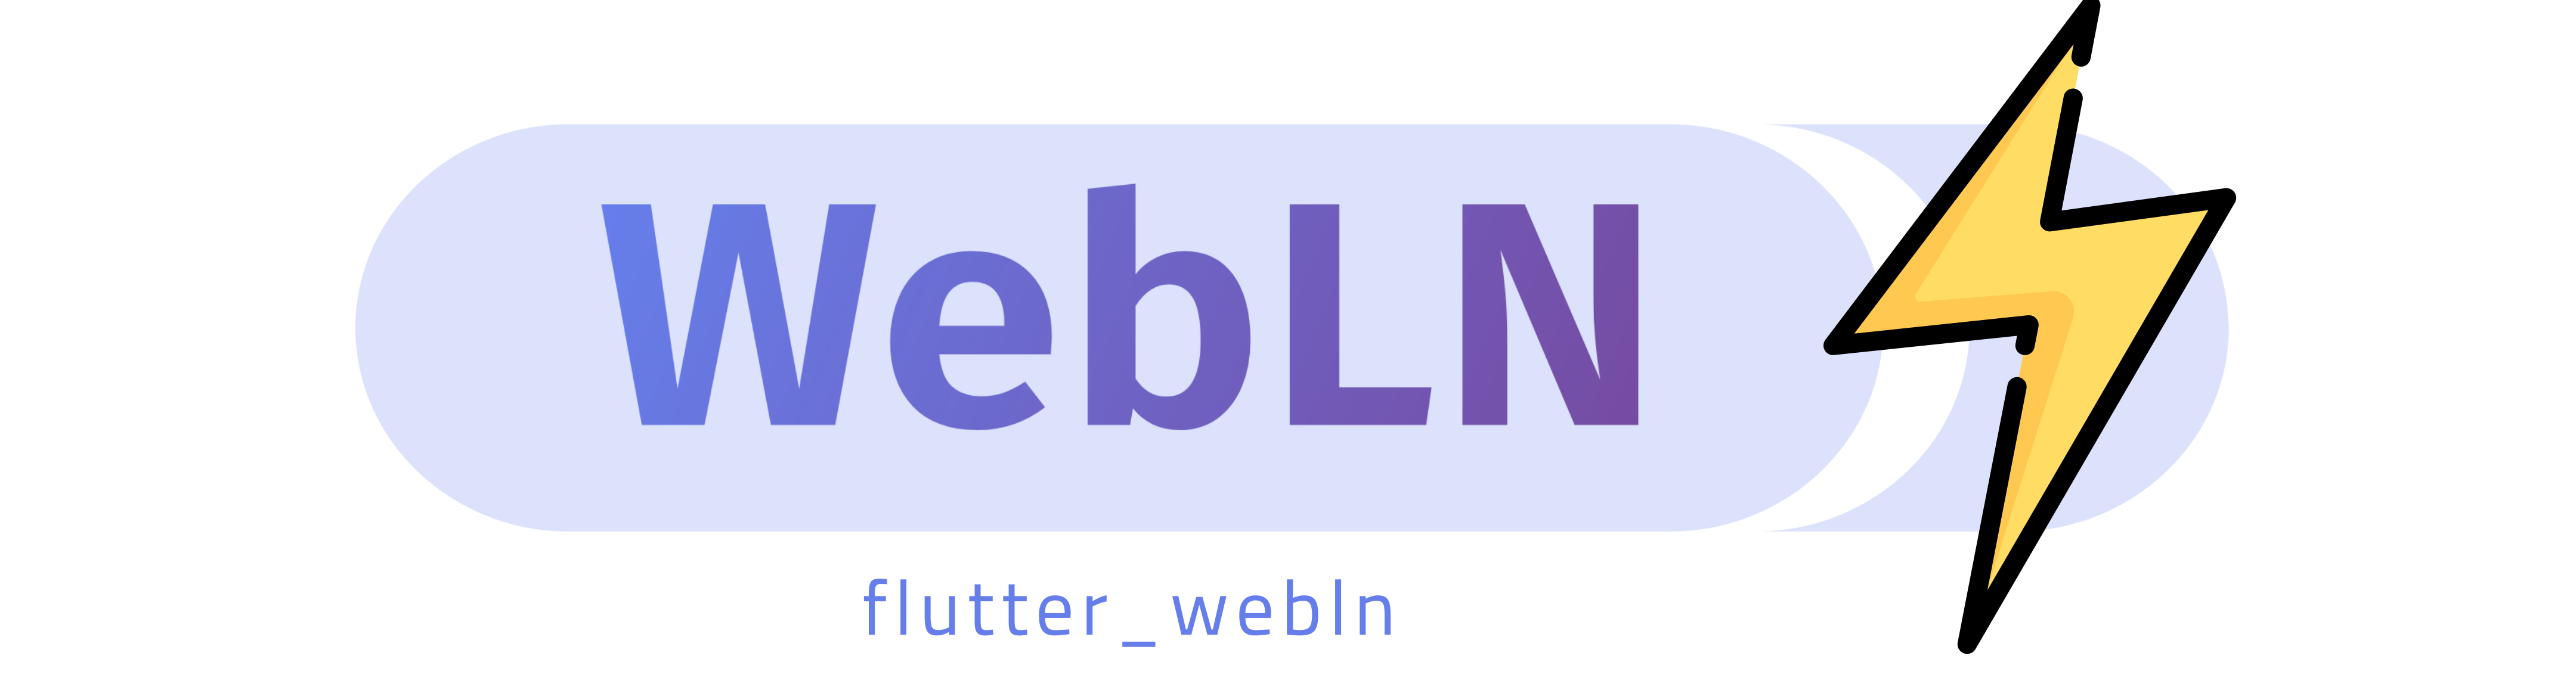 flutter_webln package logo